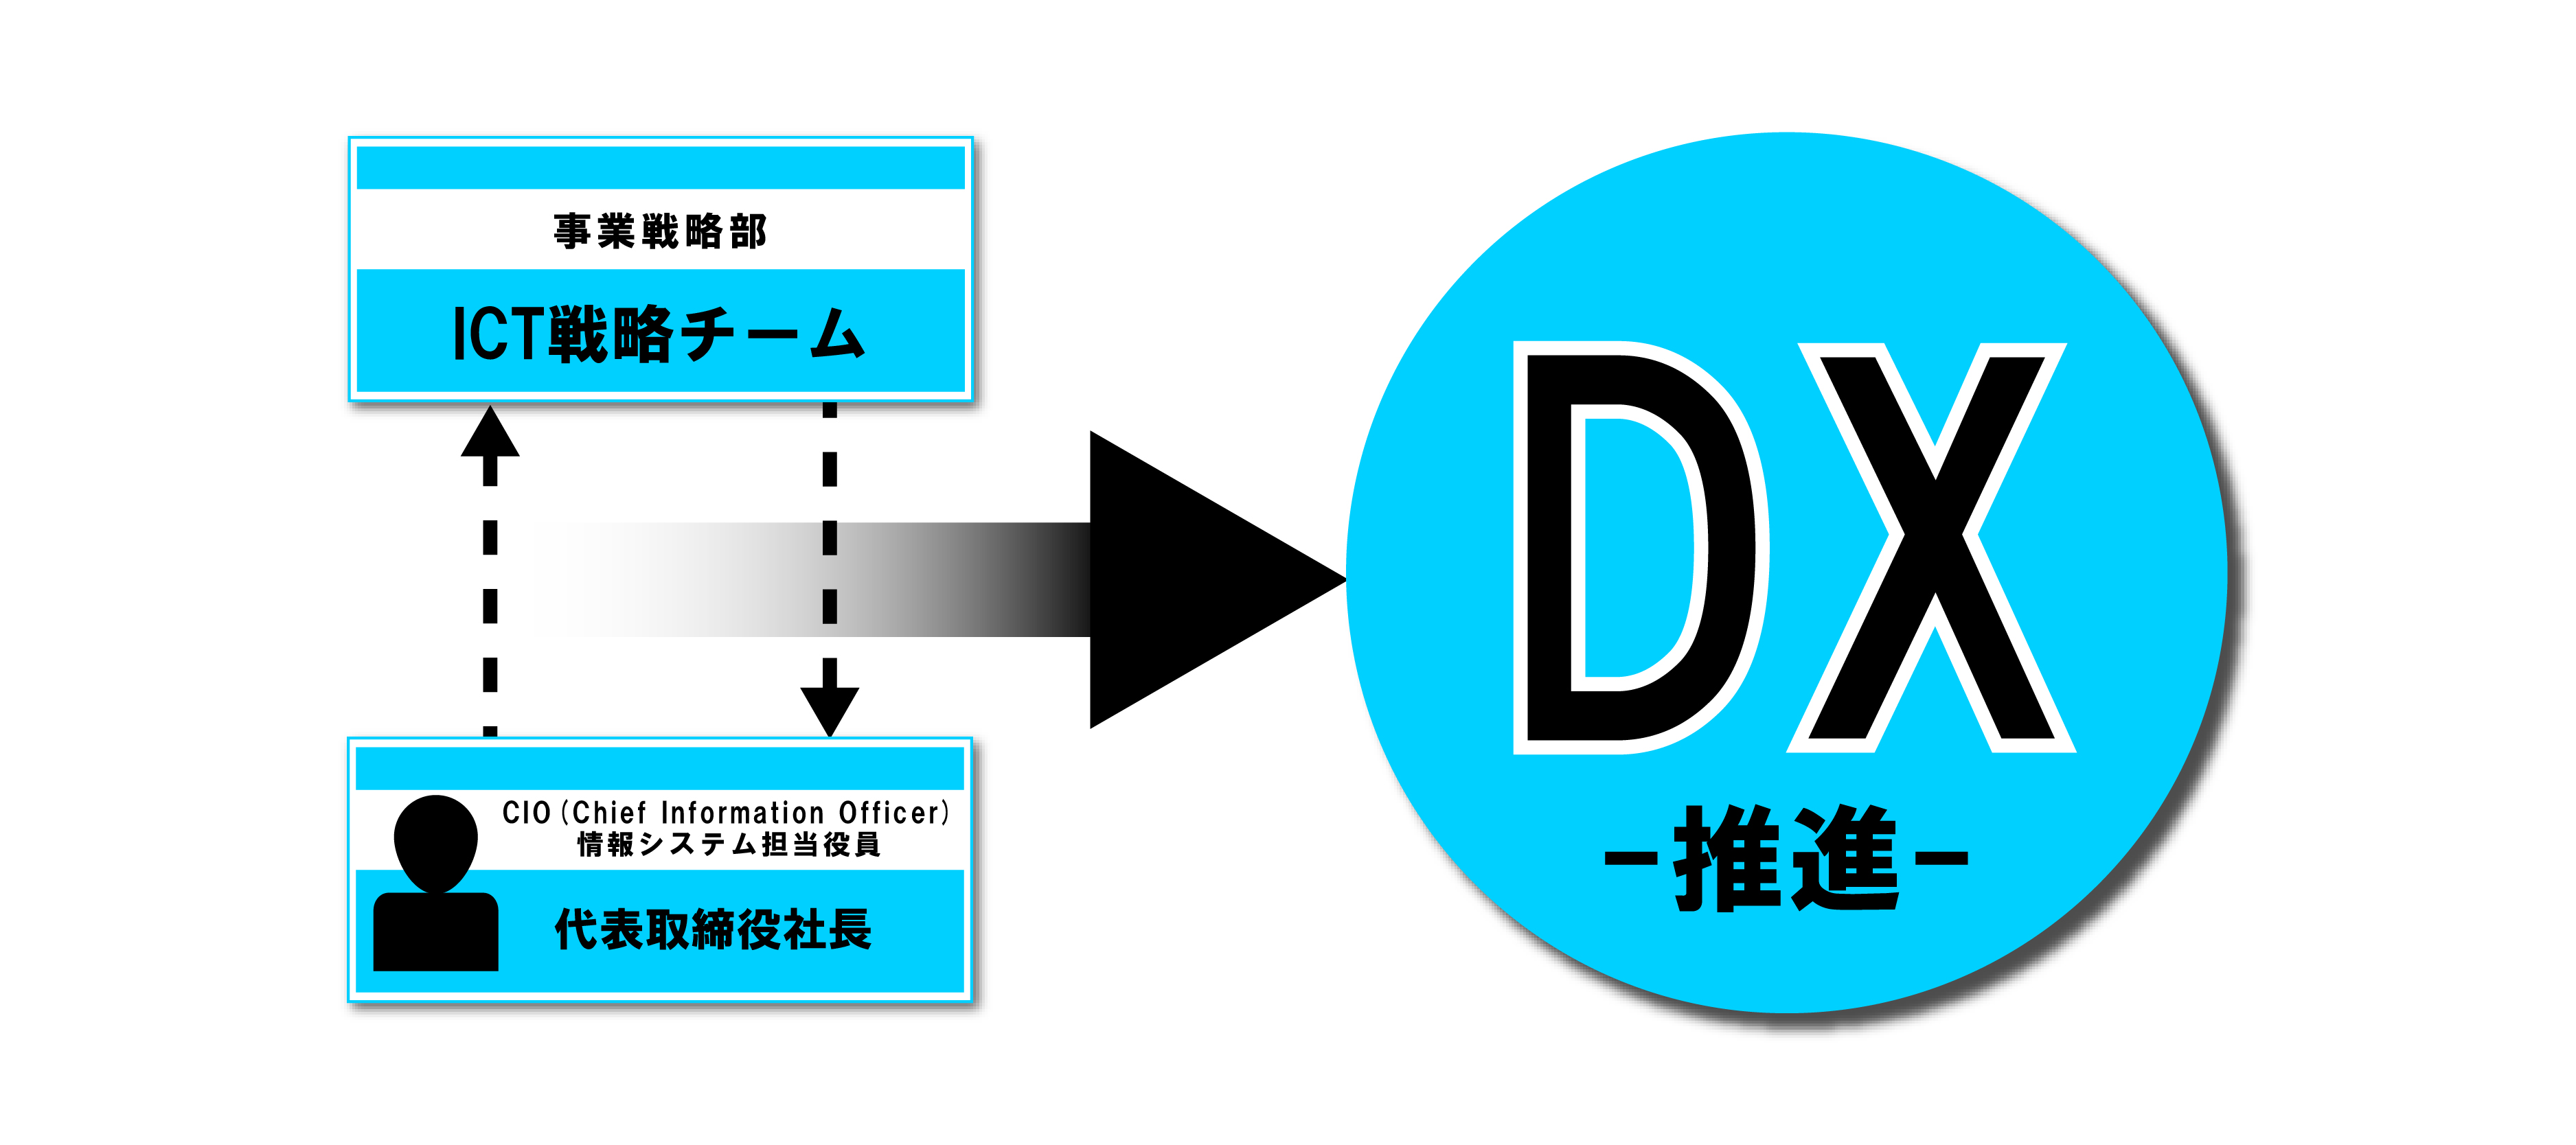 DX推進戦略